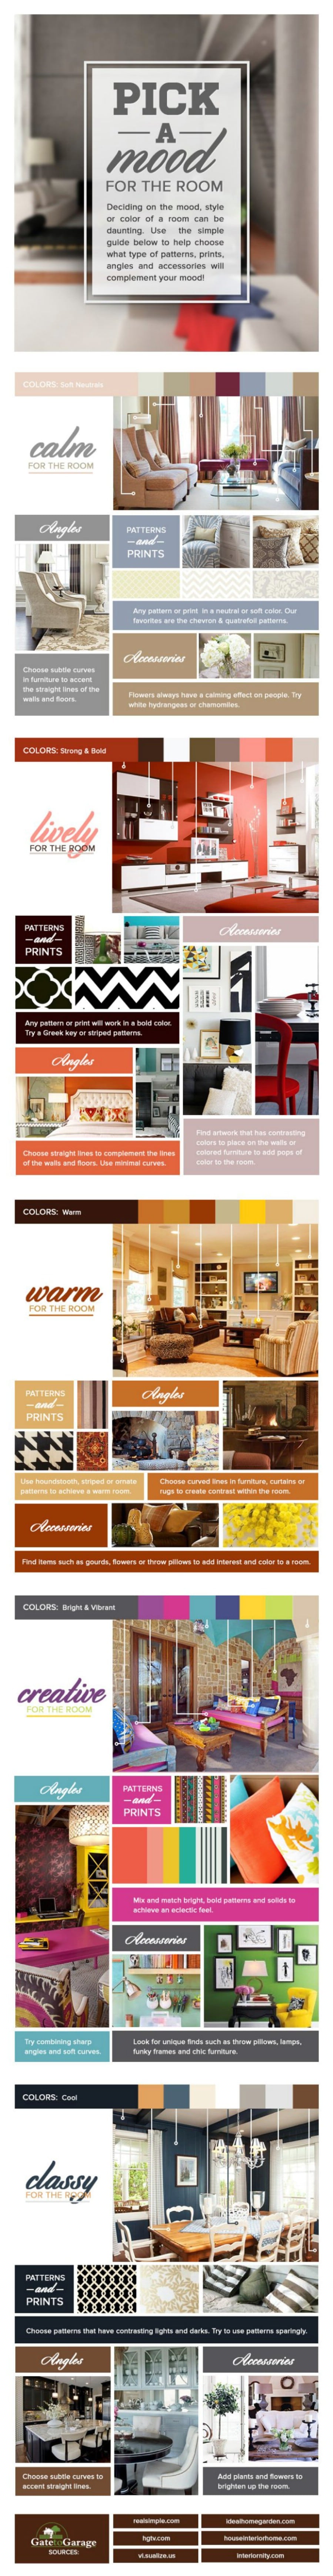 Room Color Palettes | Interior design tips, Home renovation, Room design